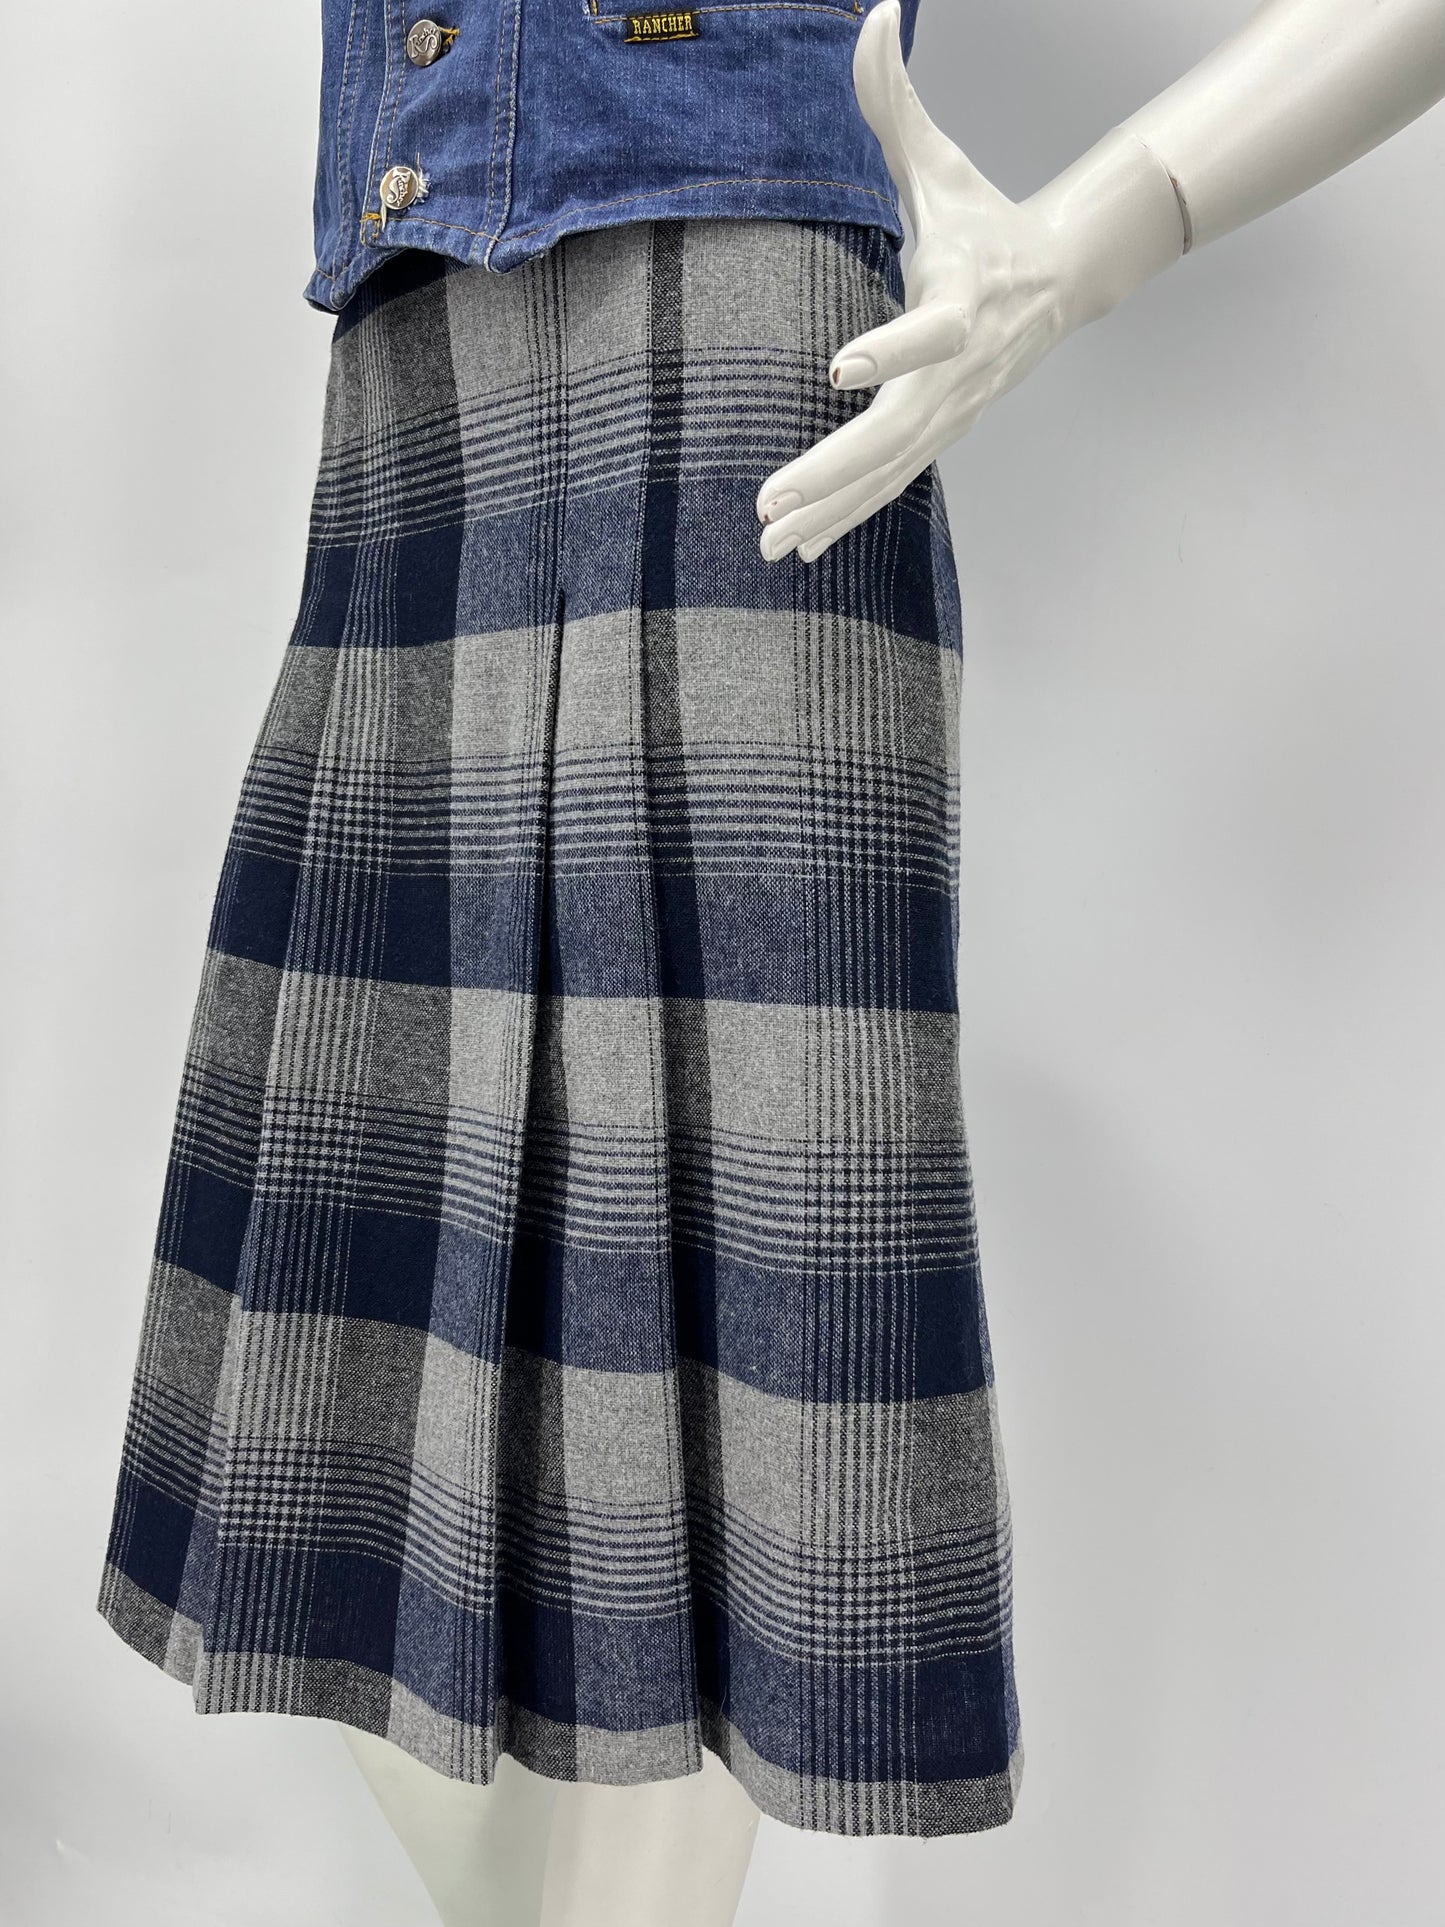 Kaijuska, ruutukuvioinen villasekoitehame, 70-luku, vyöt.ymp. 66cm, kokoarvio 34